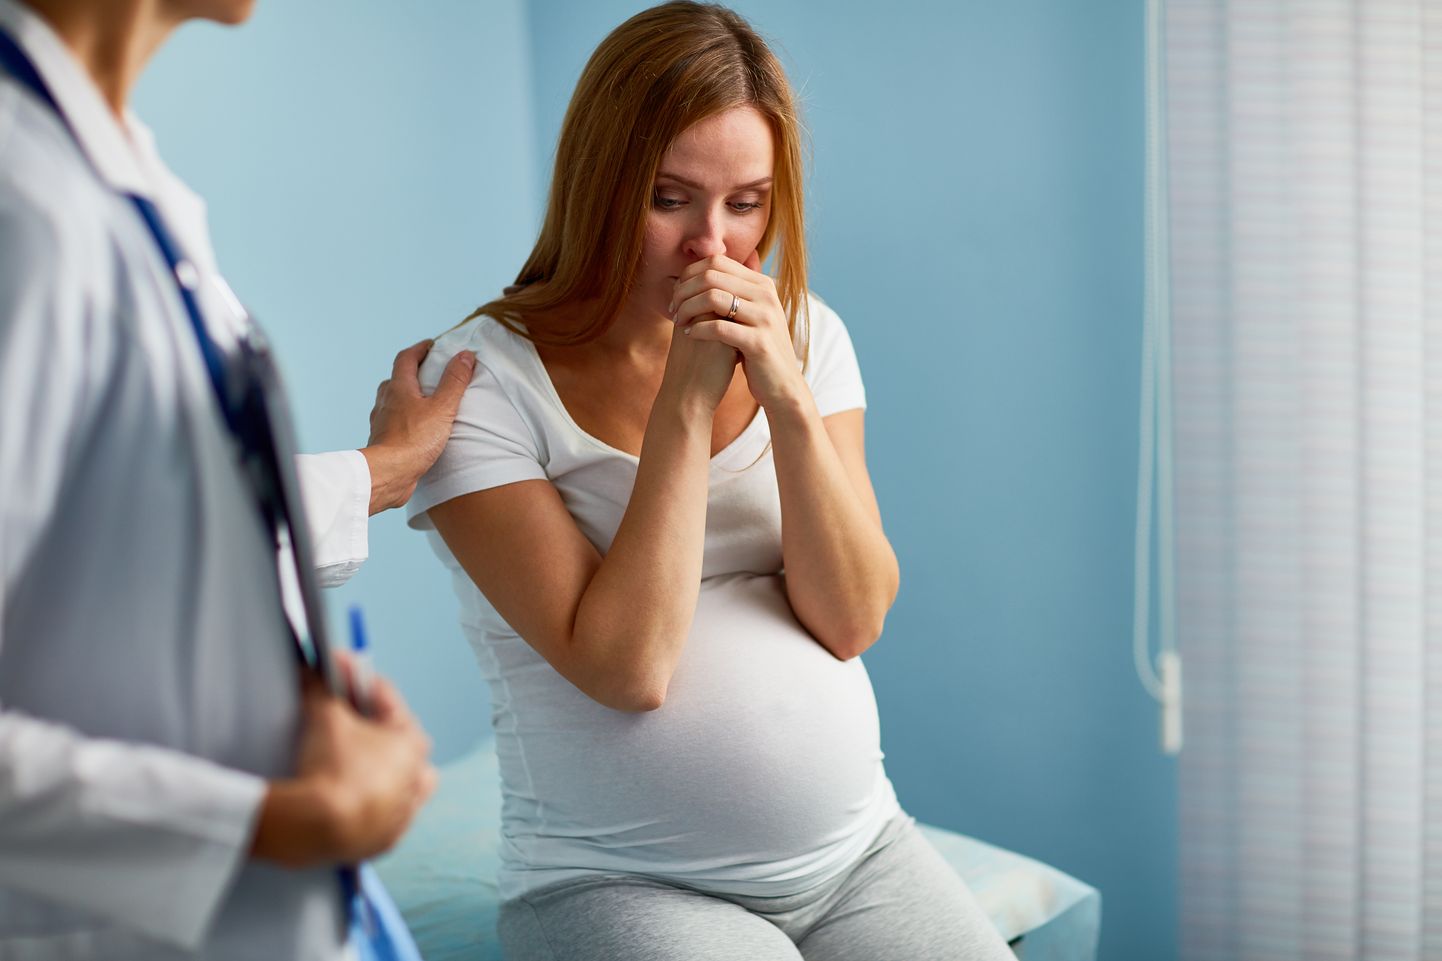 Isetehtud rasedustestide meisterdajad arvavad samuti end hCG-d mõõtvat, kuid vaid väheste leiutiste taga on teaduslikud tõendid.